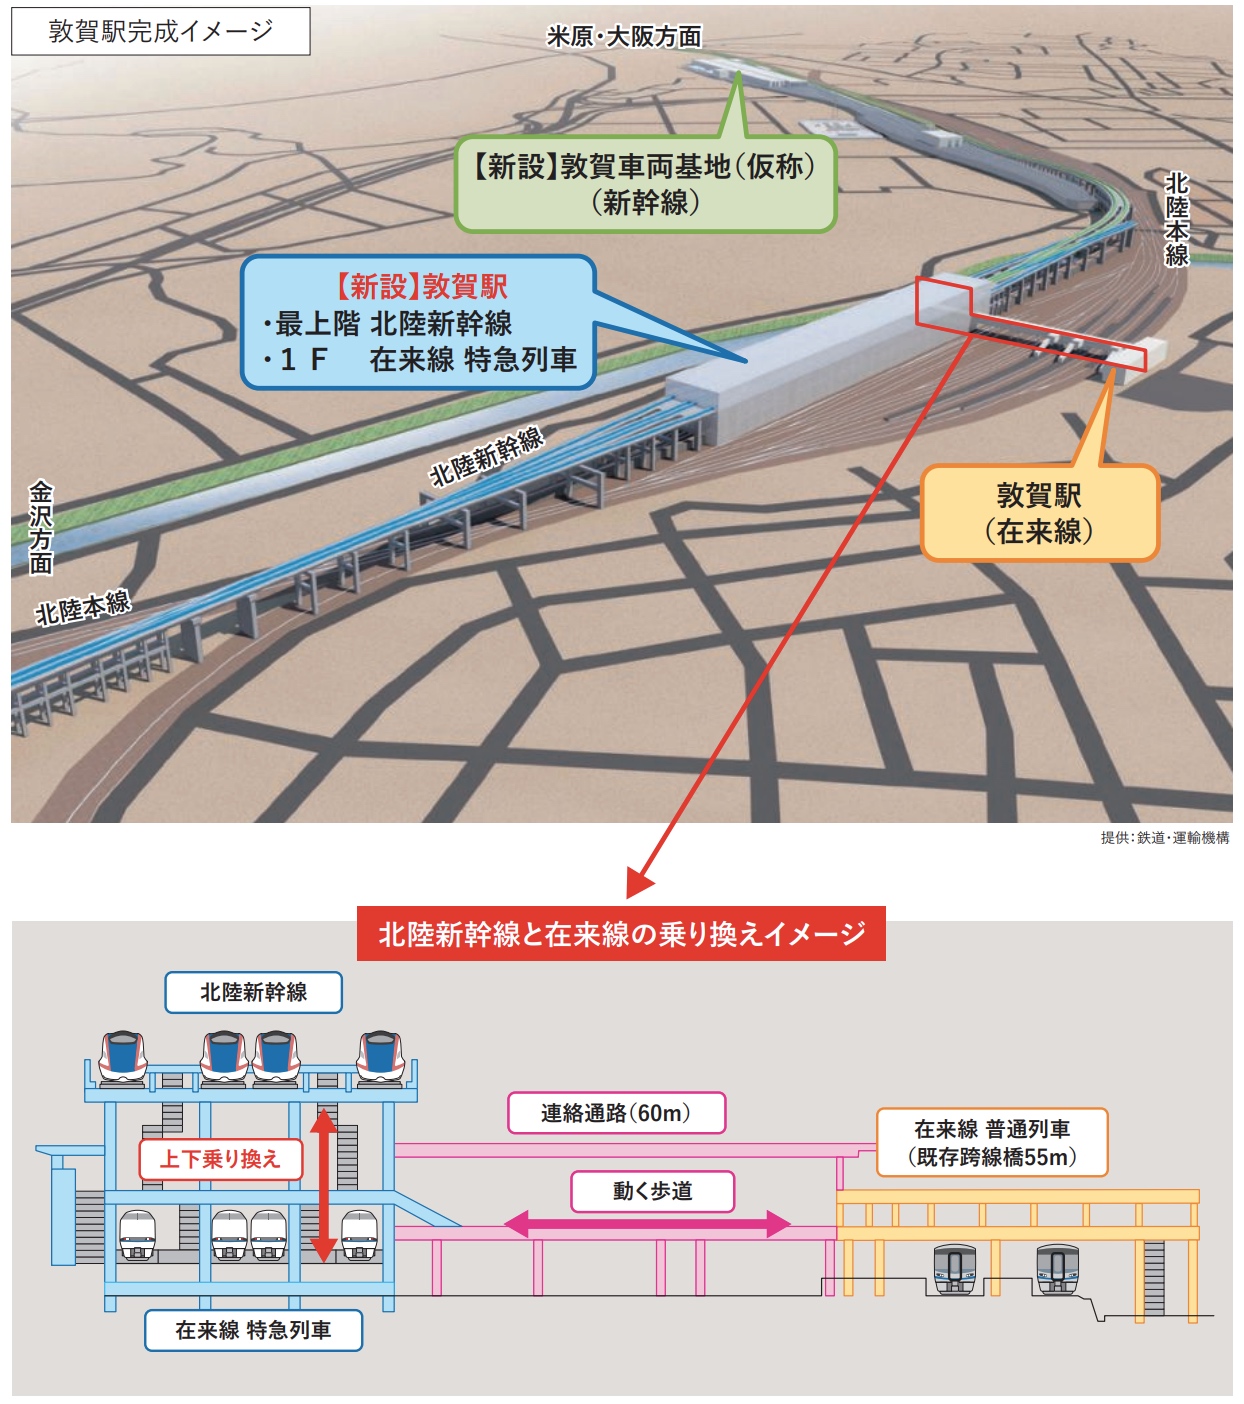 Shinkansen im obersten Stock: Die Struktur des neuen Bahnhofs.